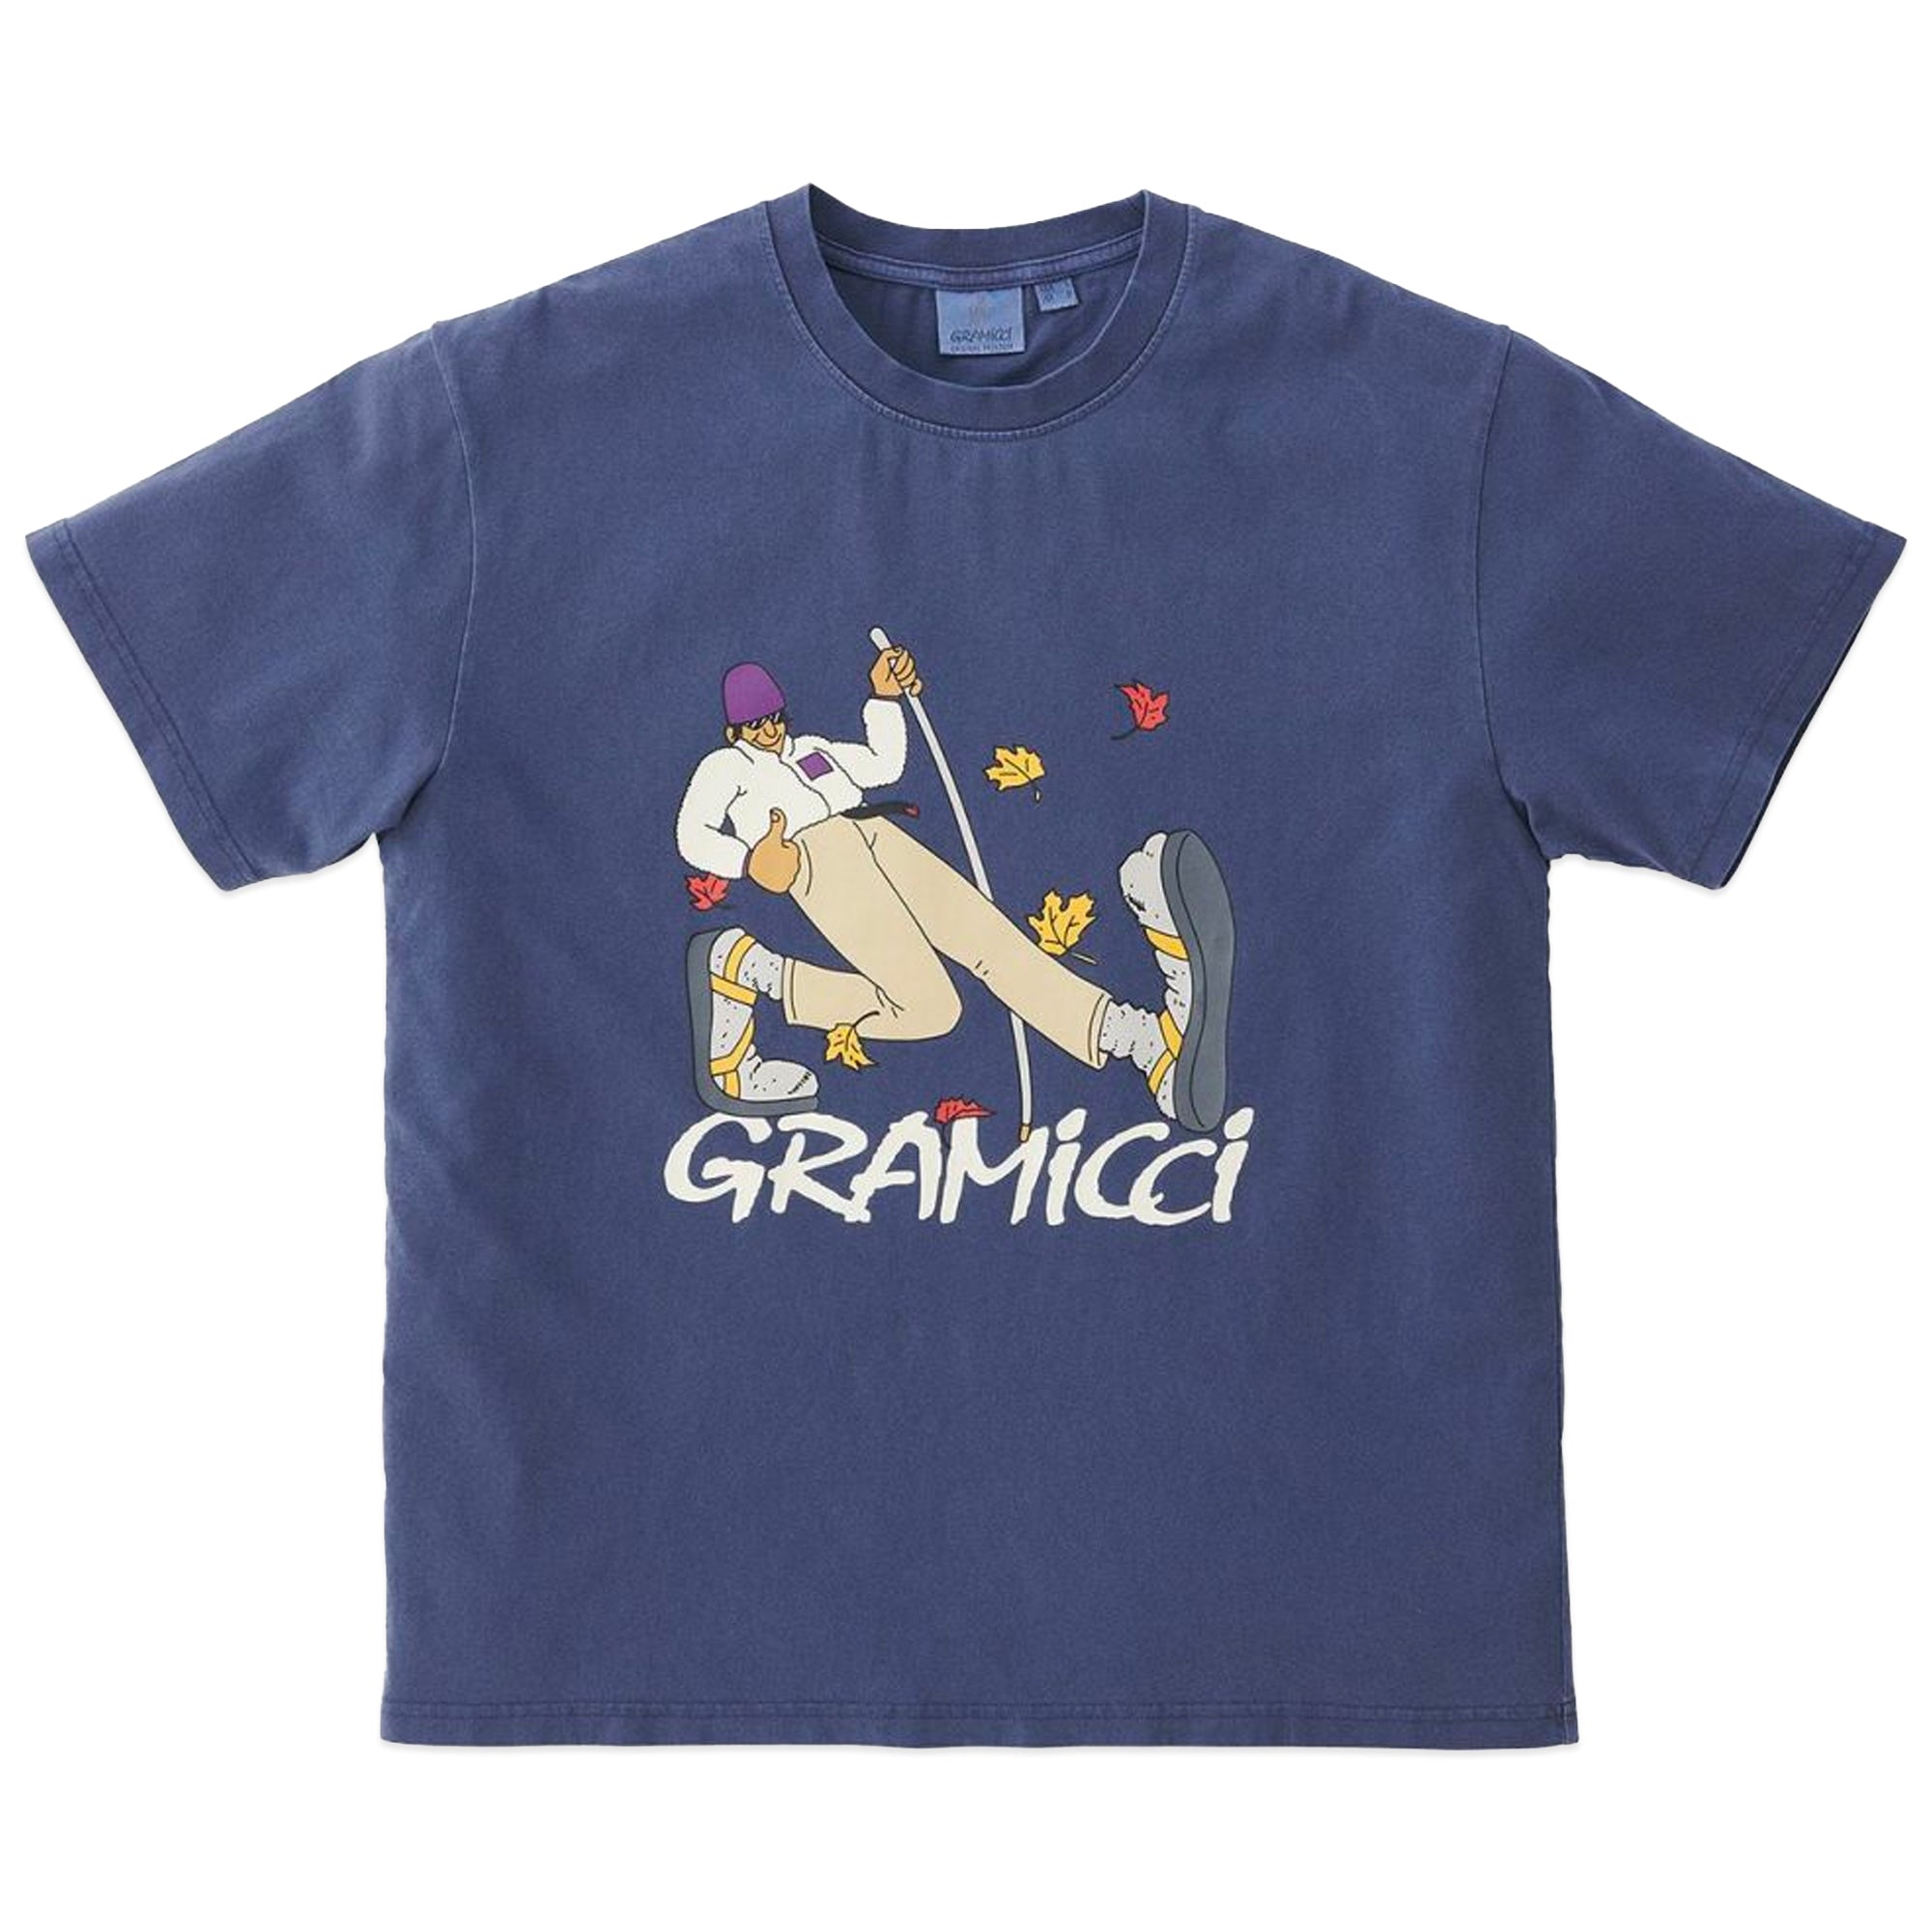 Gramicci Hiker T-Shirt - Navy Pigment